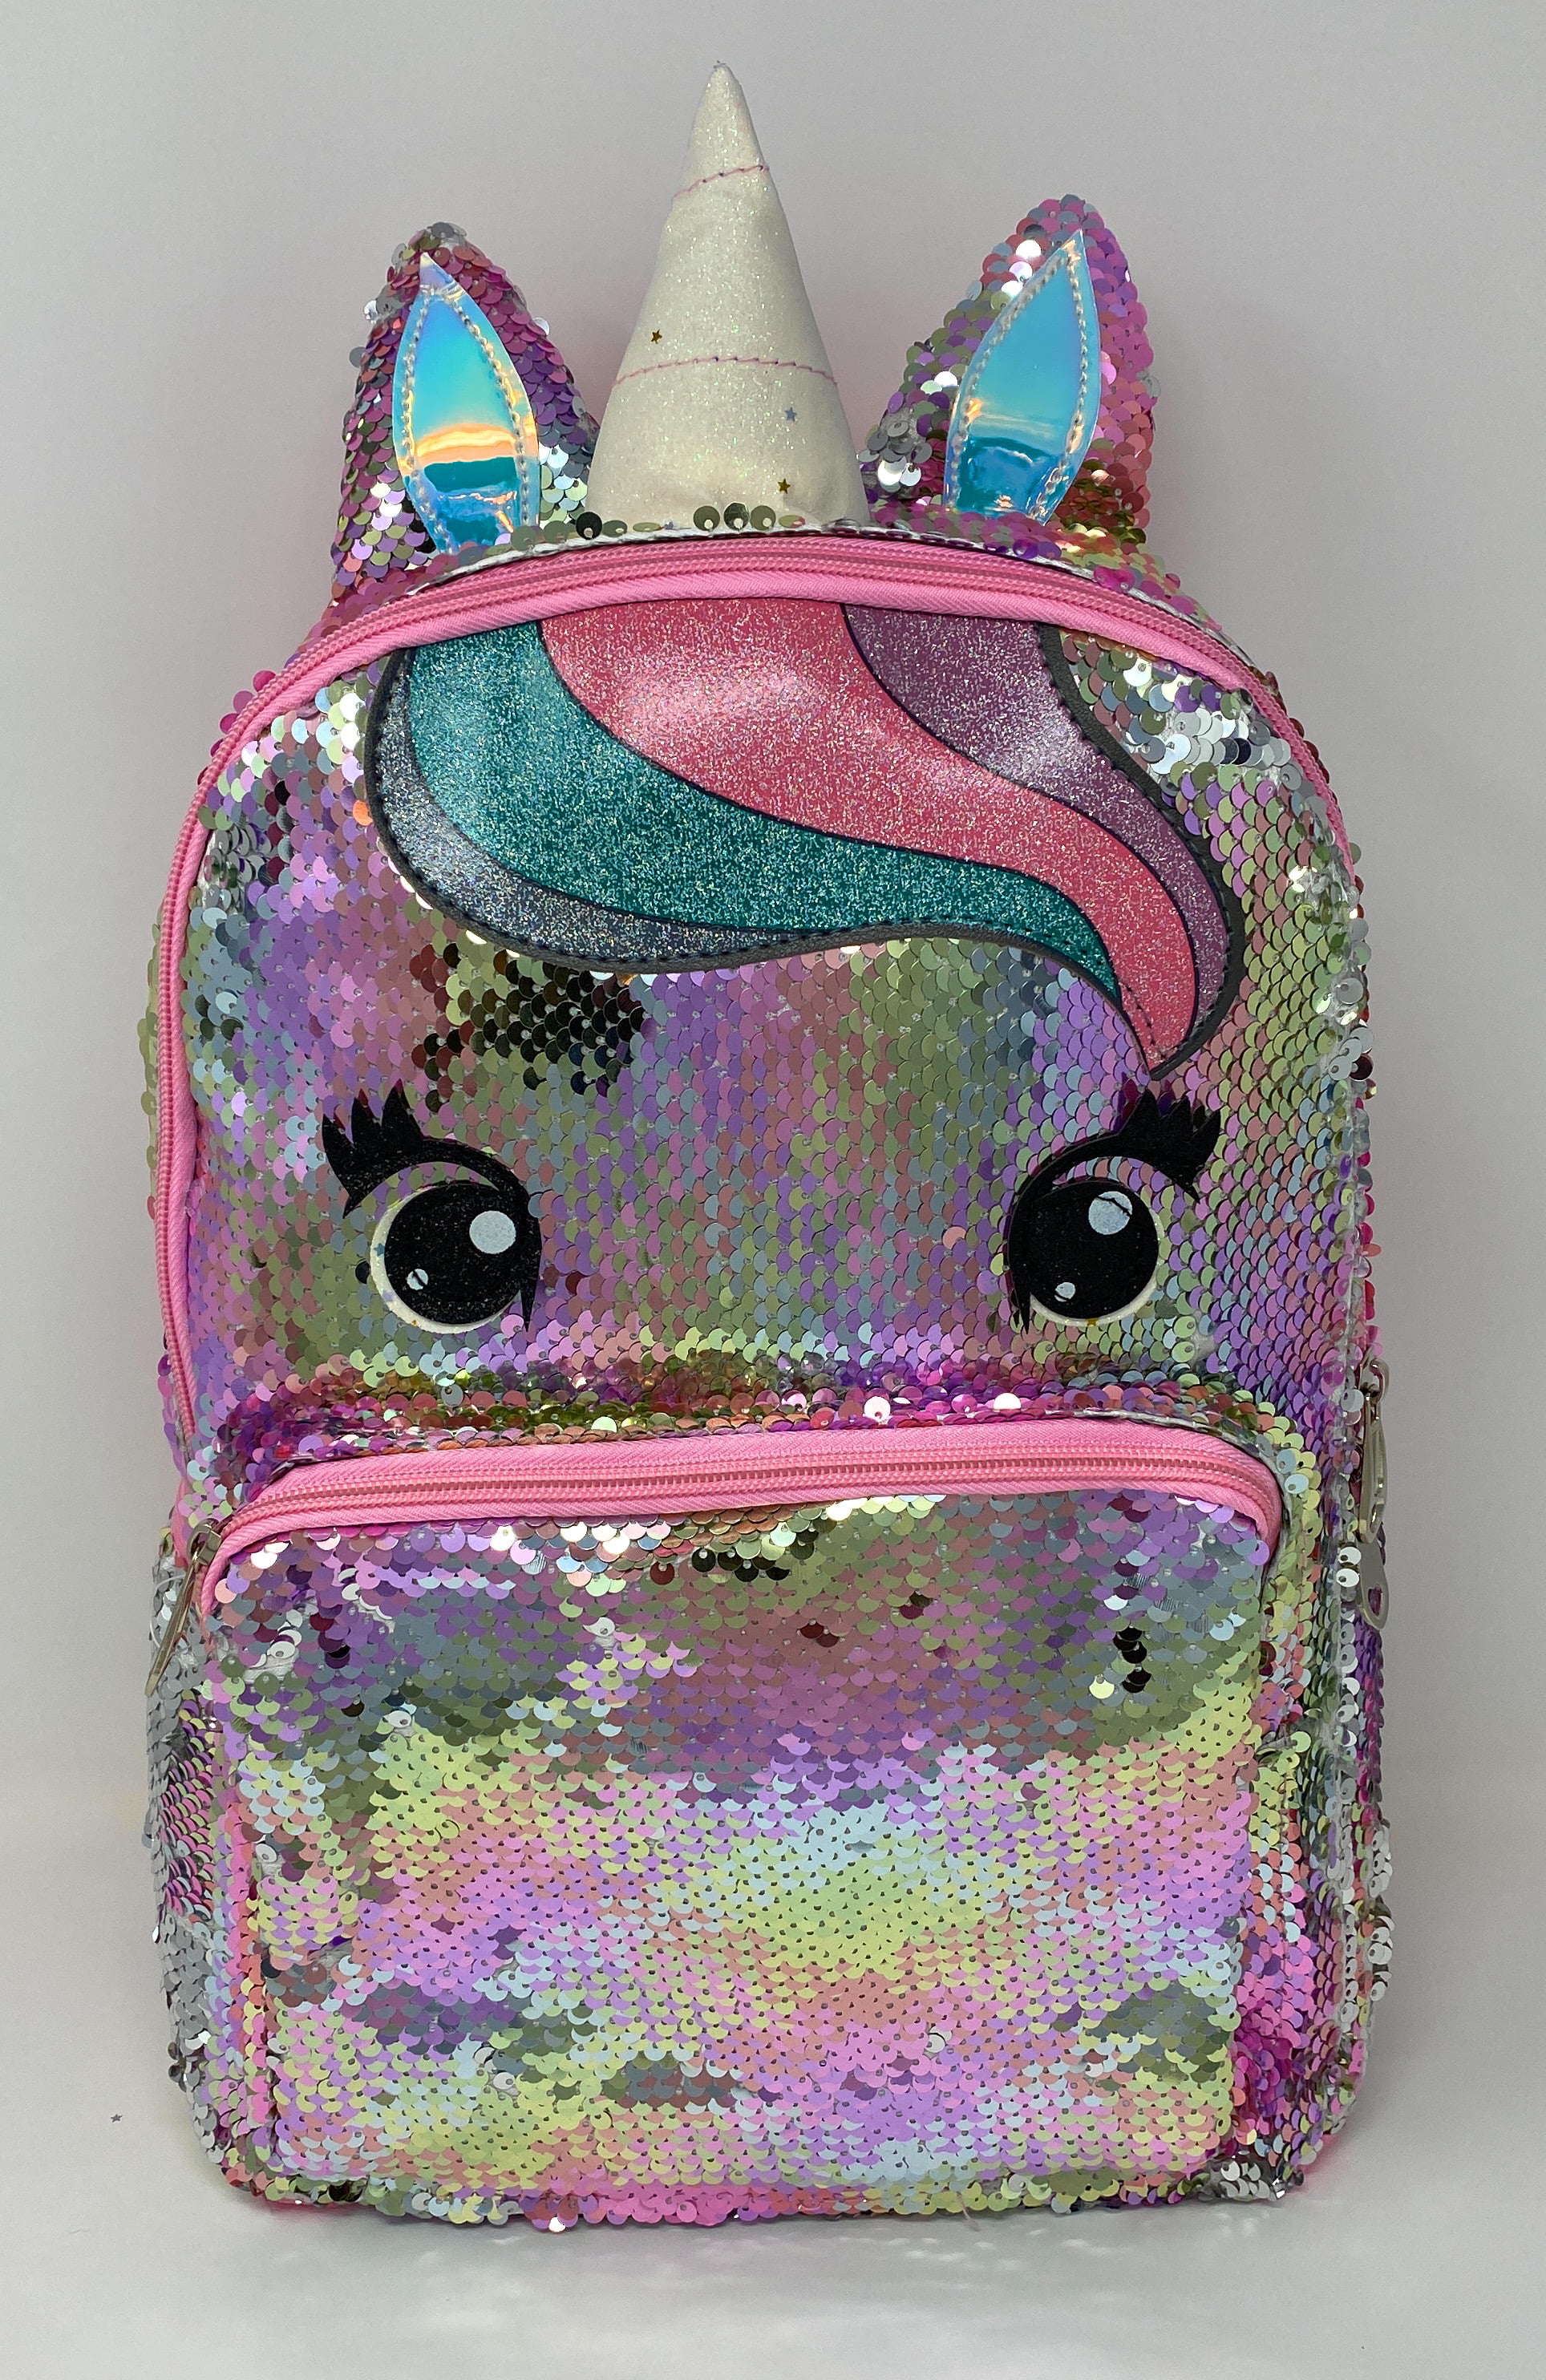 V.I.P. - Unicorn Backpack for Girls Large Sequin School Bag Multi-color ...